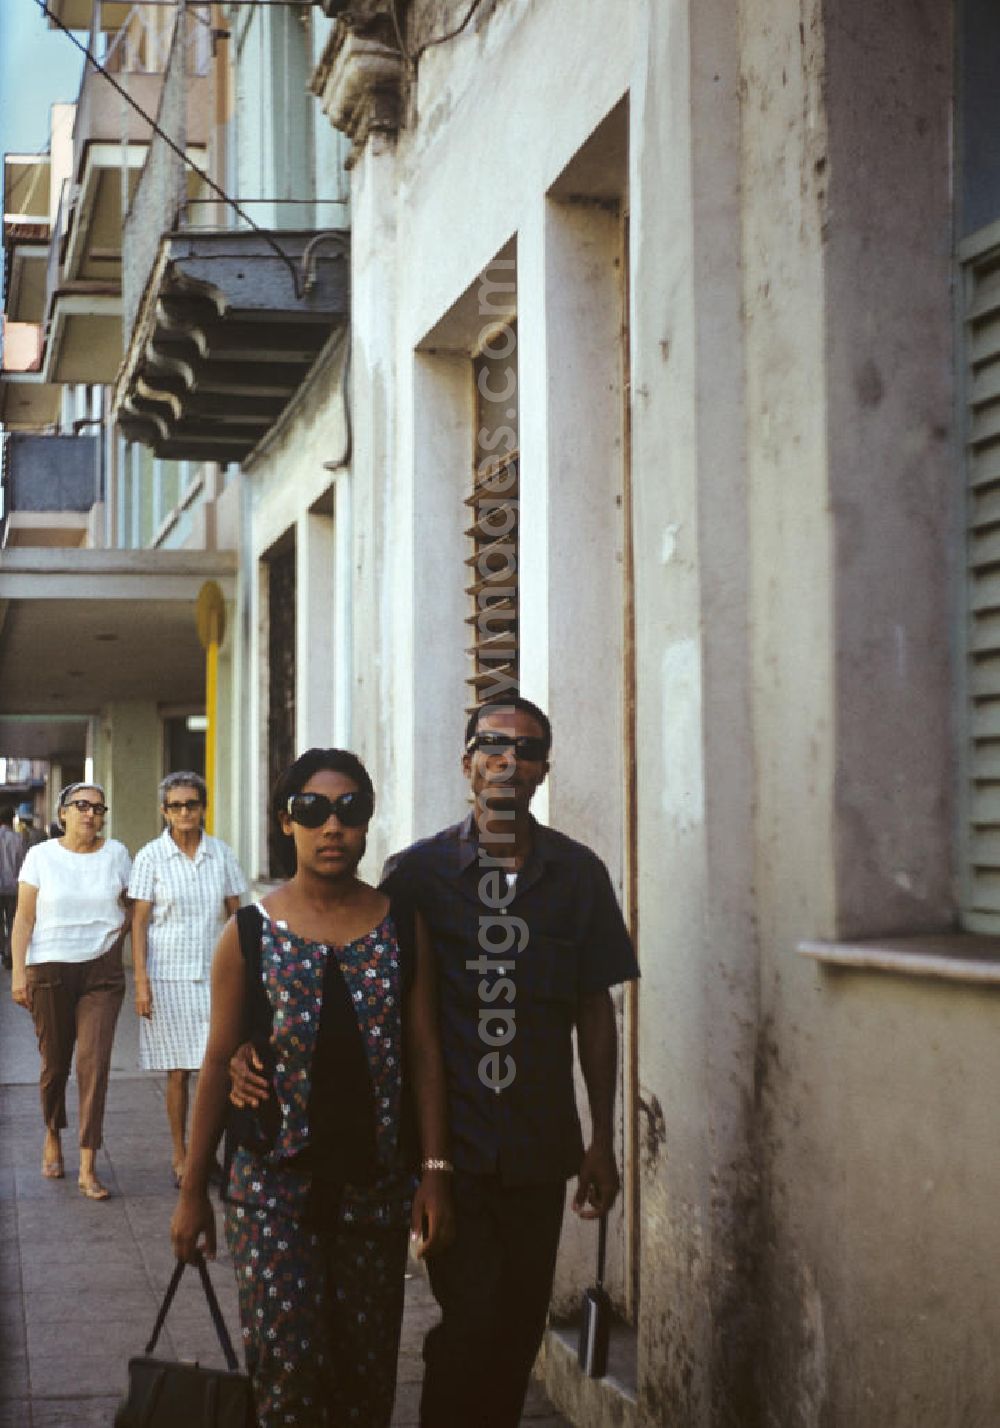 GDR image archive: Camagüey - Eine junges Paar läuft durch eine Straße der drittgrößten Stadt Kubas, Camagüey.